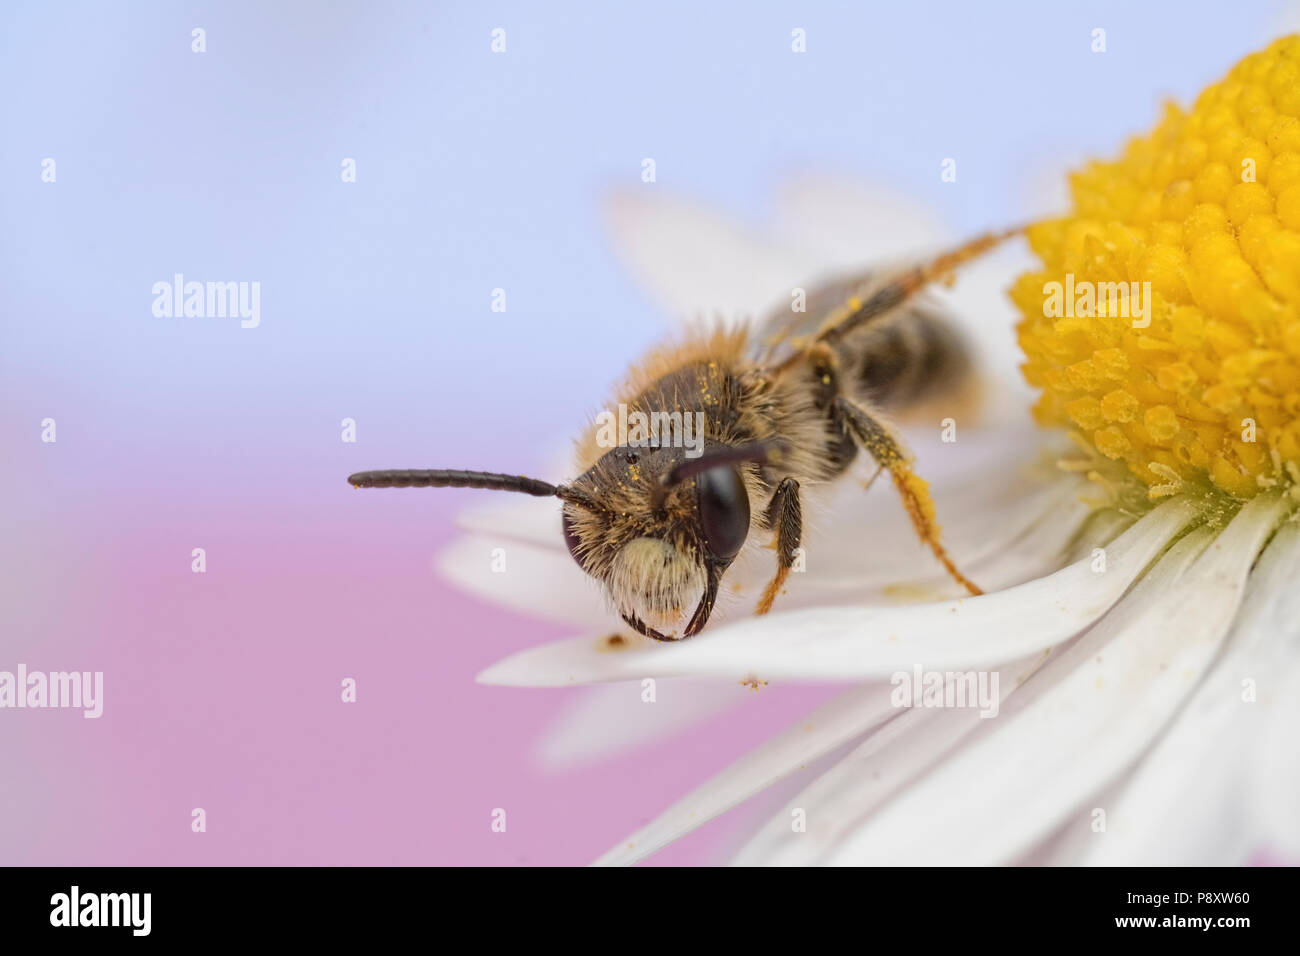 Solitary Bee sleeping on a Daisy. Stock Photo